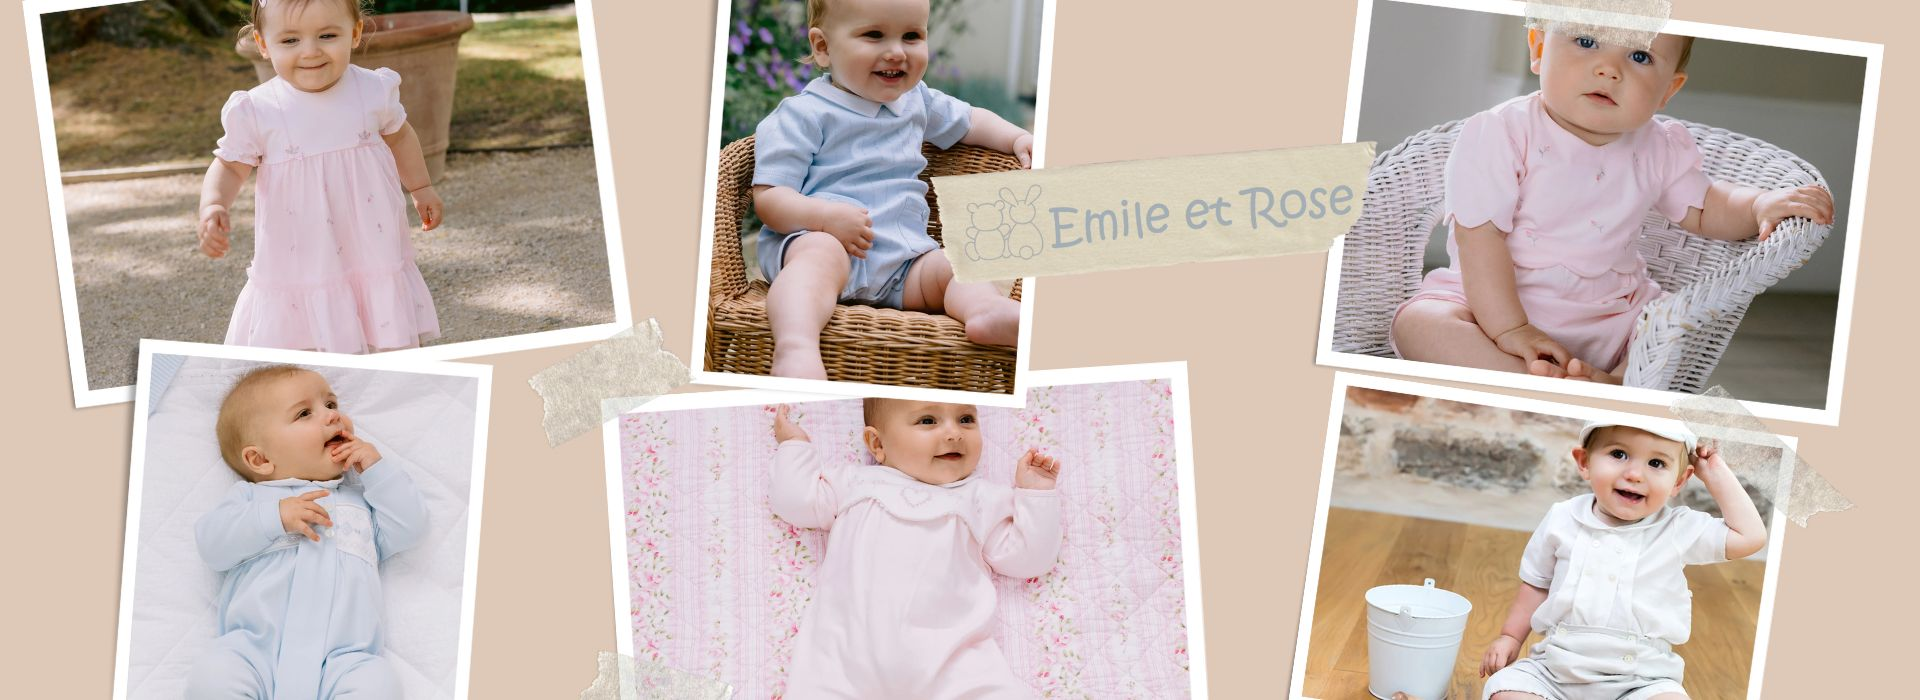 Emile et Rose Kids Clothes